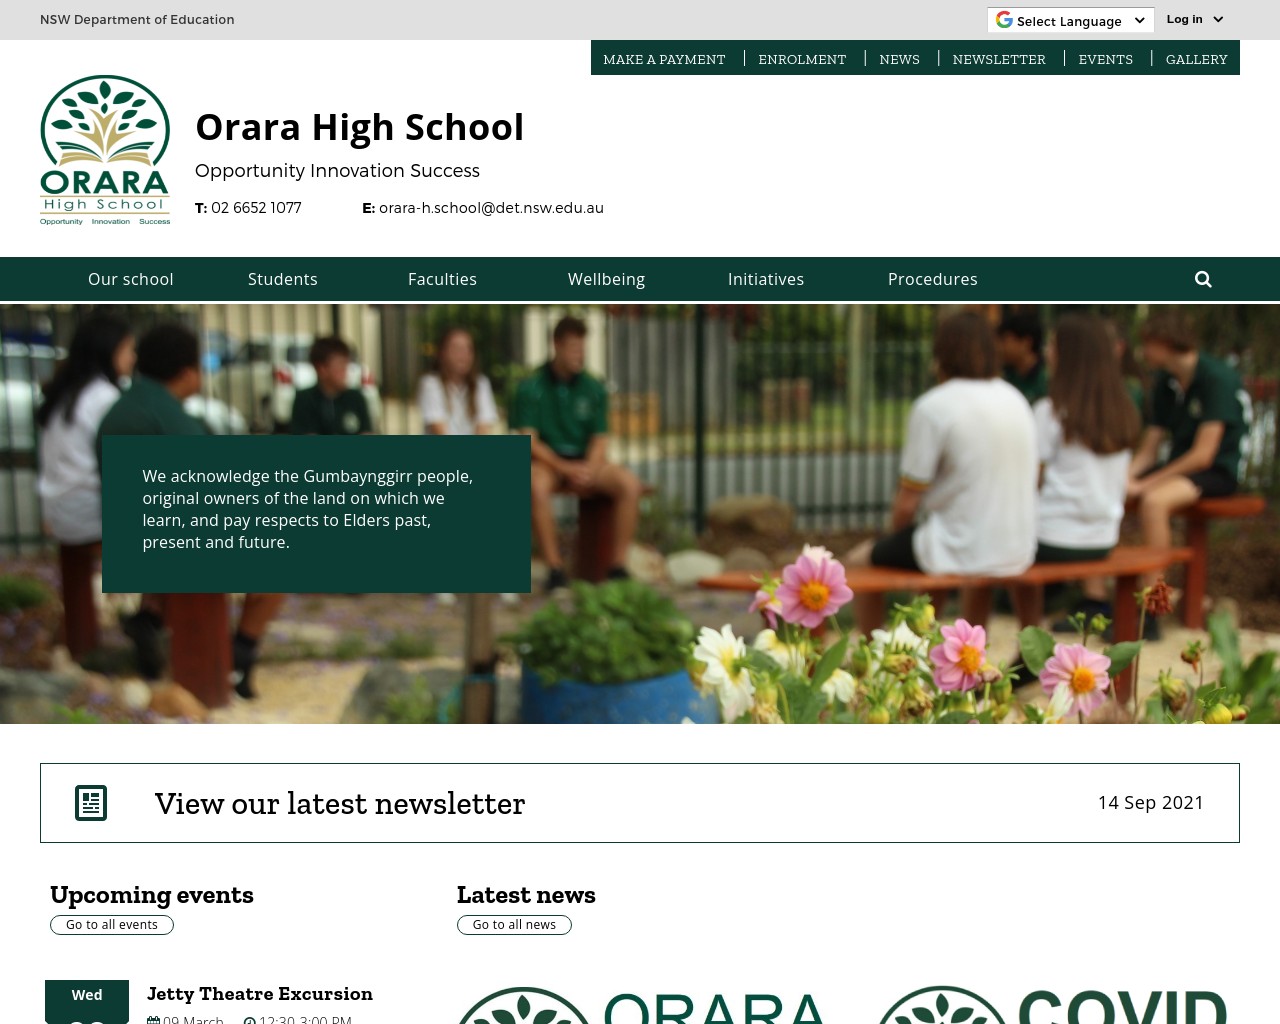 Orara High School